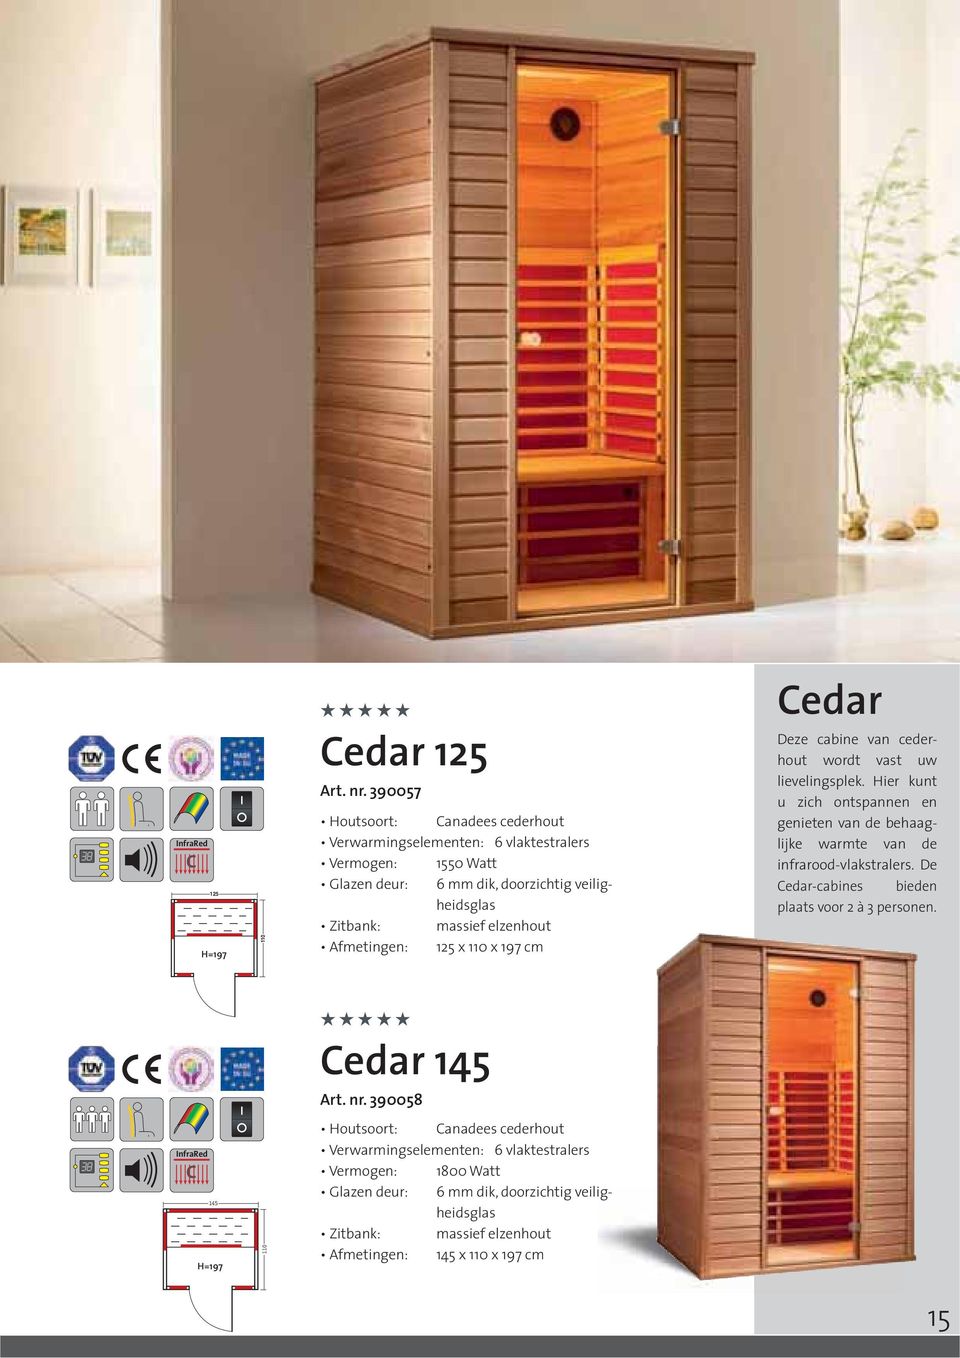 Afmetingen: 125 x 110 x 197 cm Cedar Deze cabine van cederhout wordt vast uw lievelingsplek.